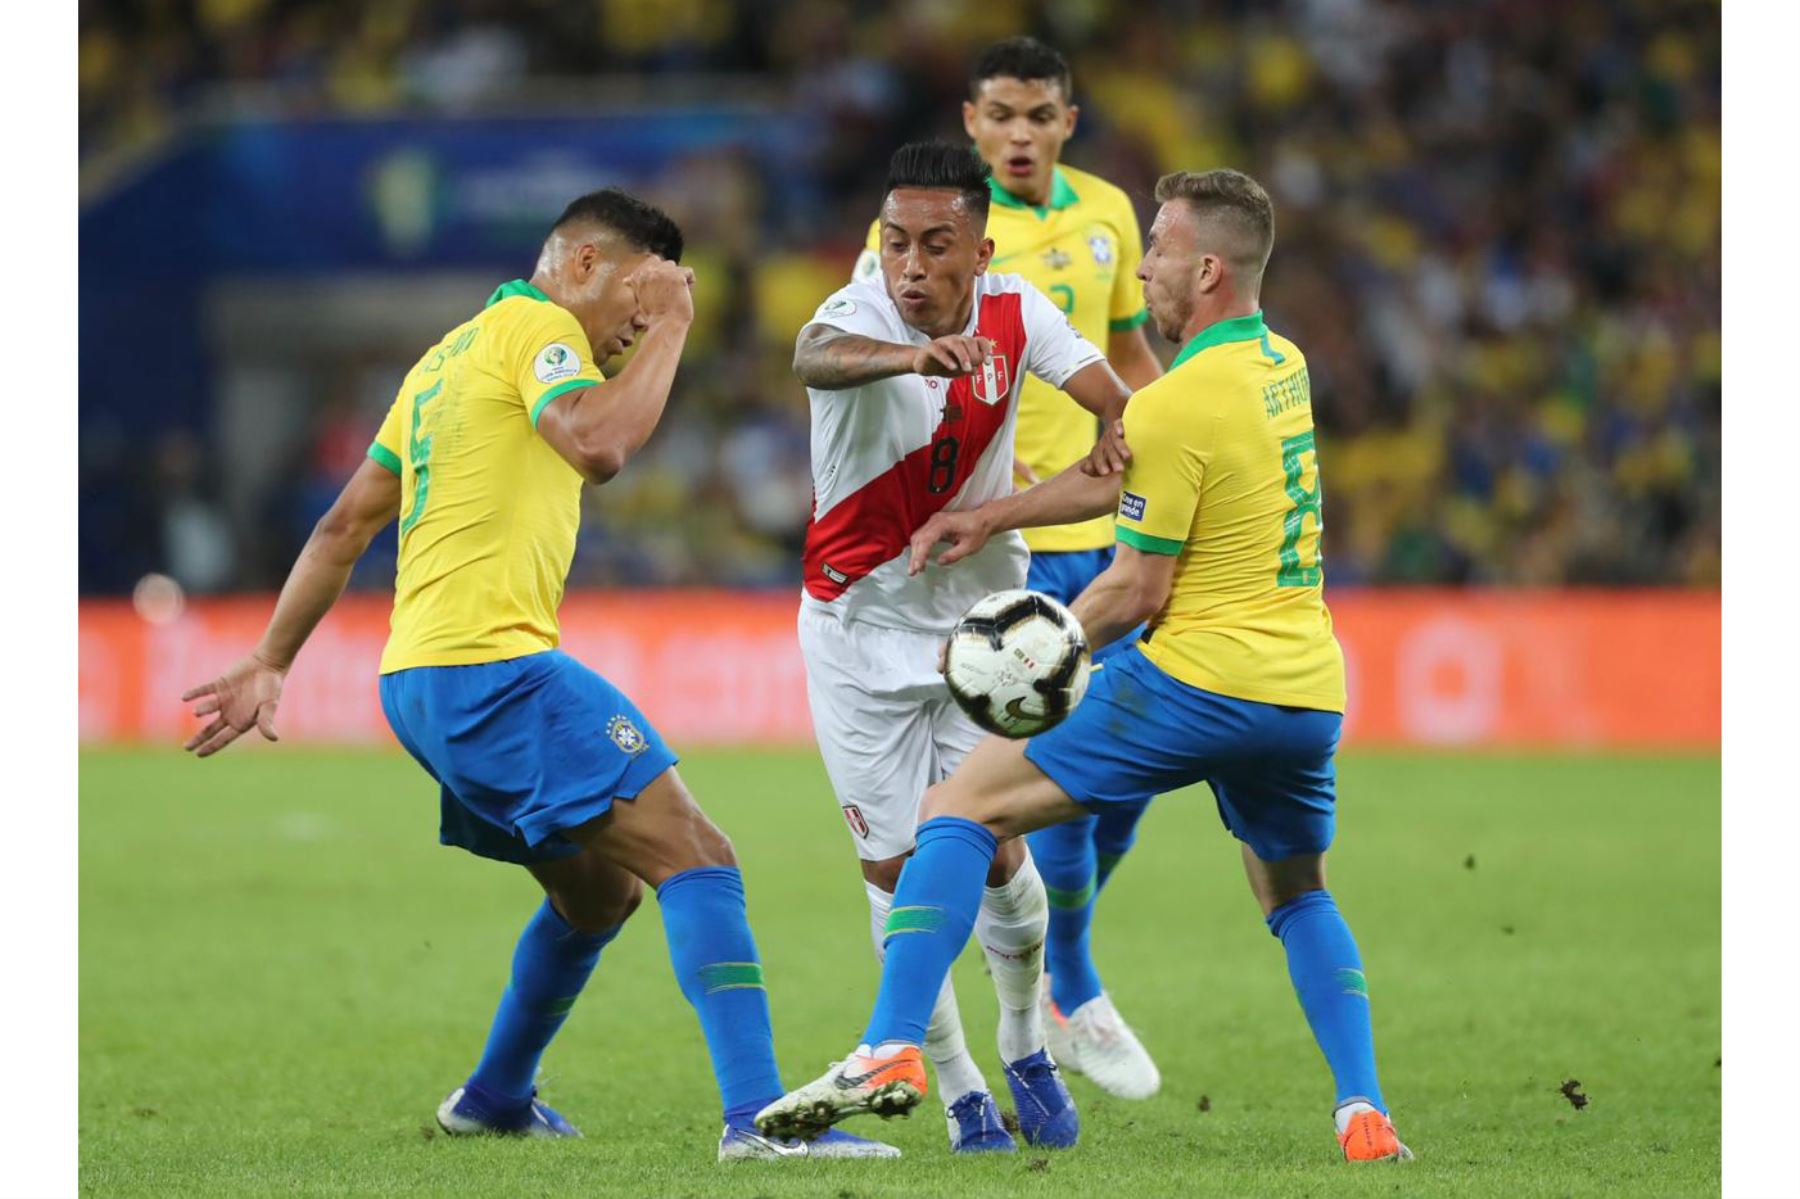 El peruano Cristian Cueva reacciona en la final del torneo de fútbol de Copa América contra Brasil en el Estadio Maracaná de Río de Janeiro, Brasil.
Foto: FPF